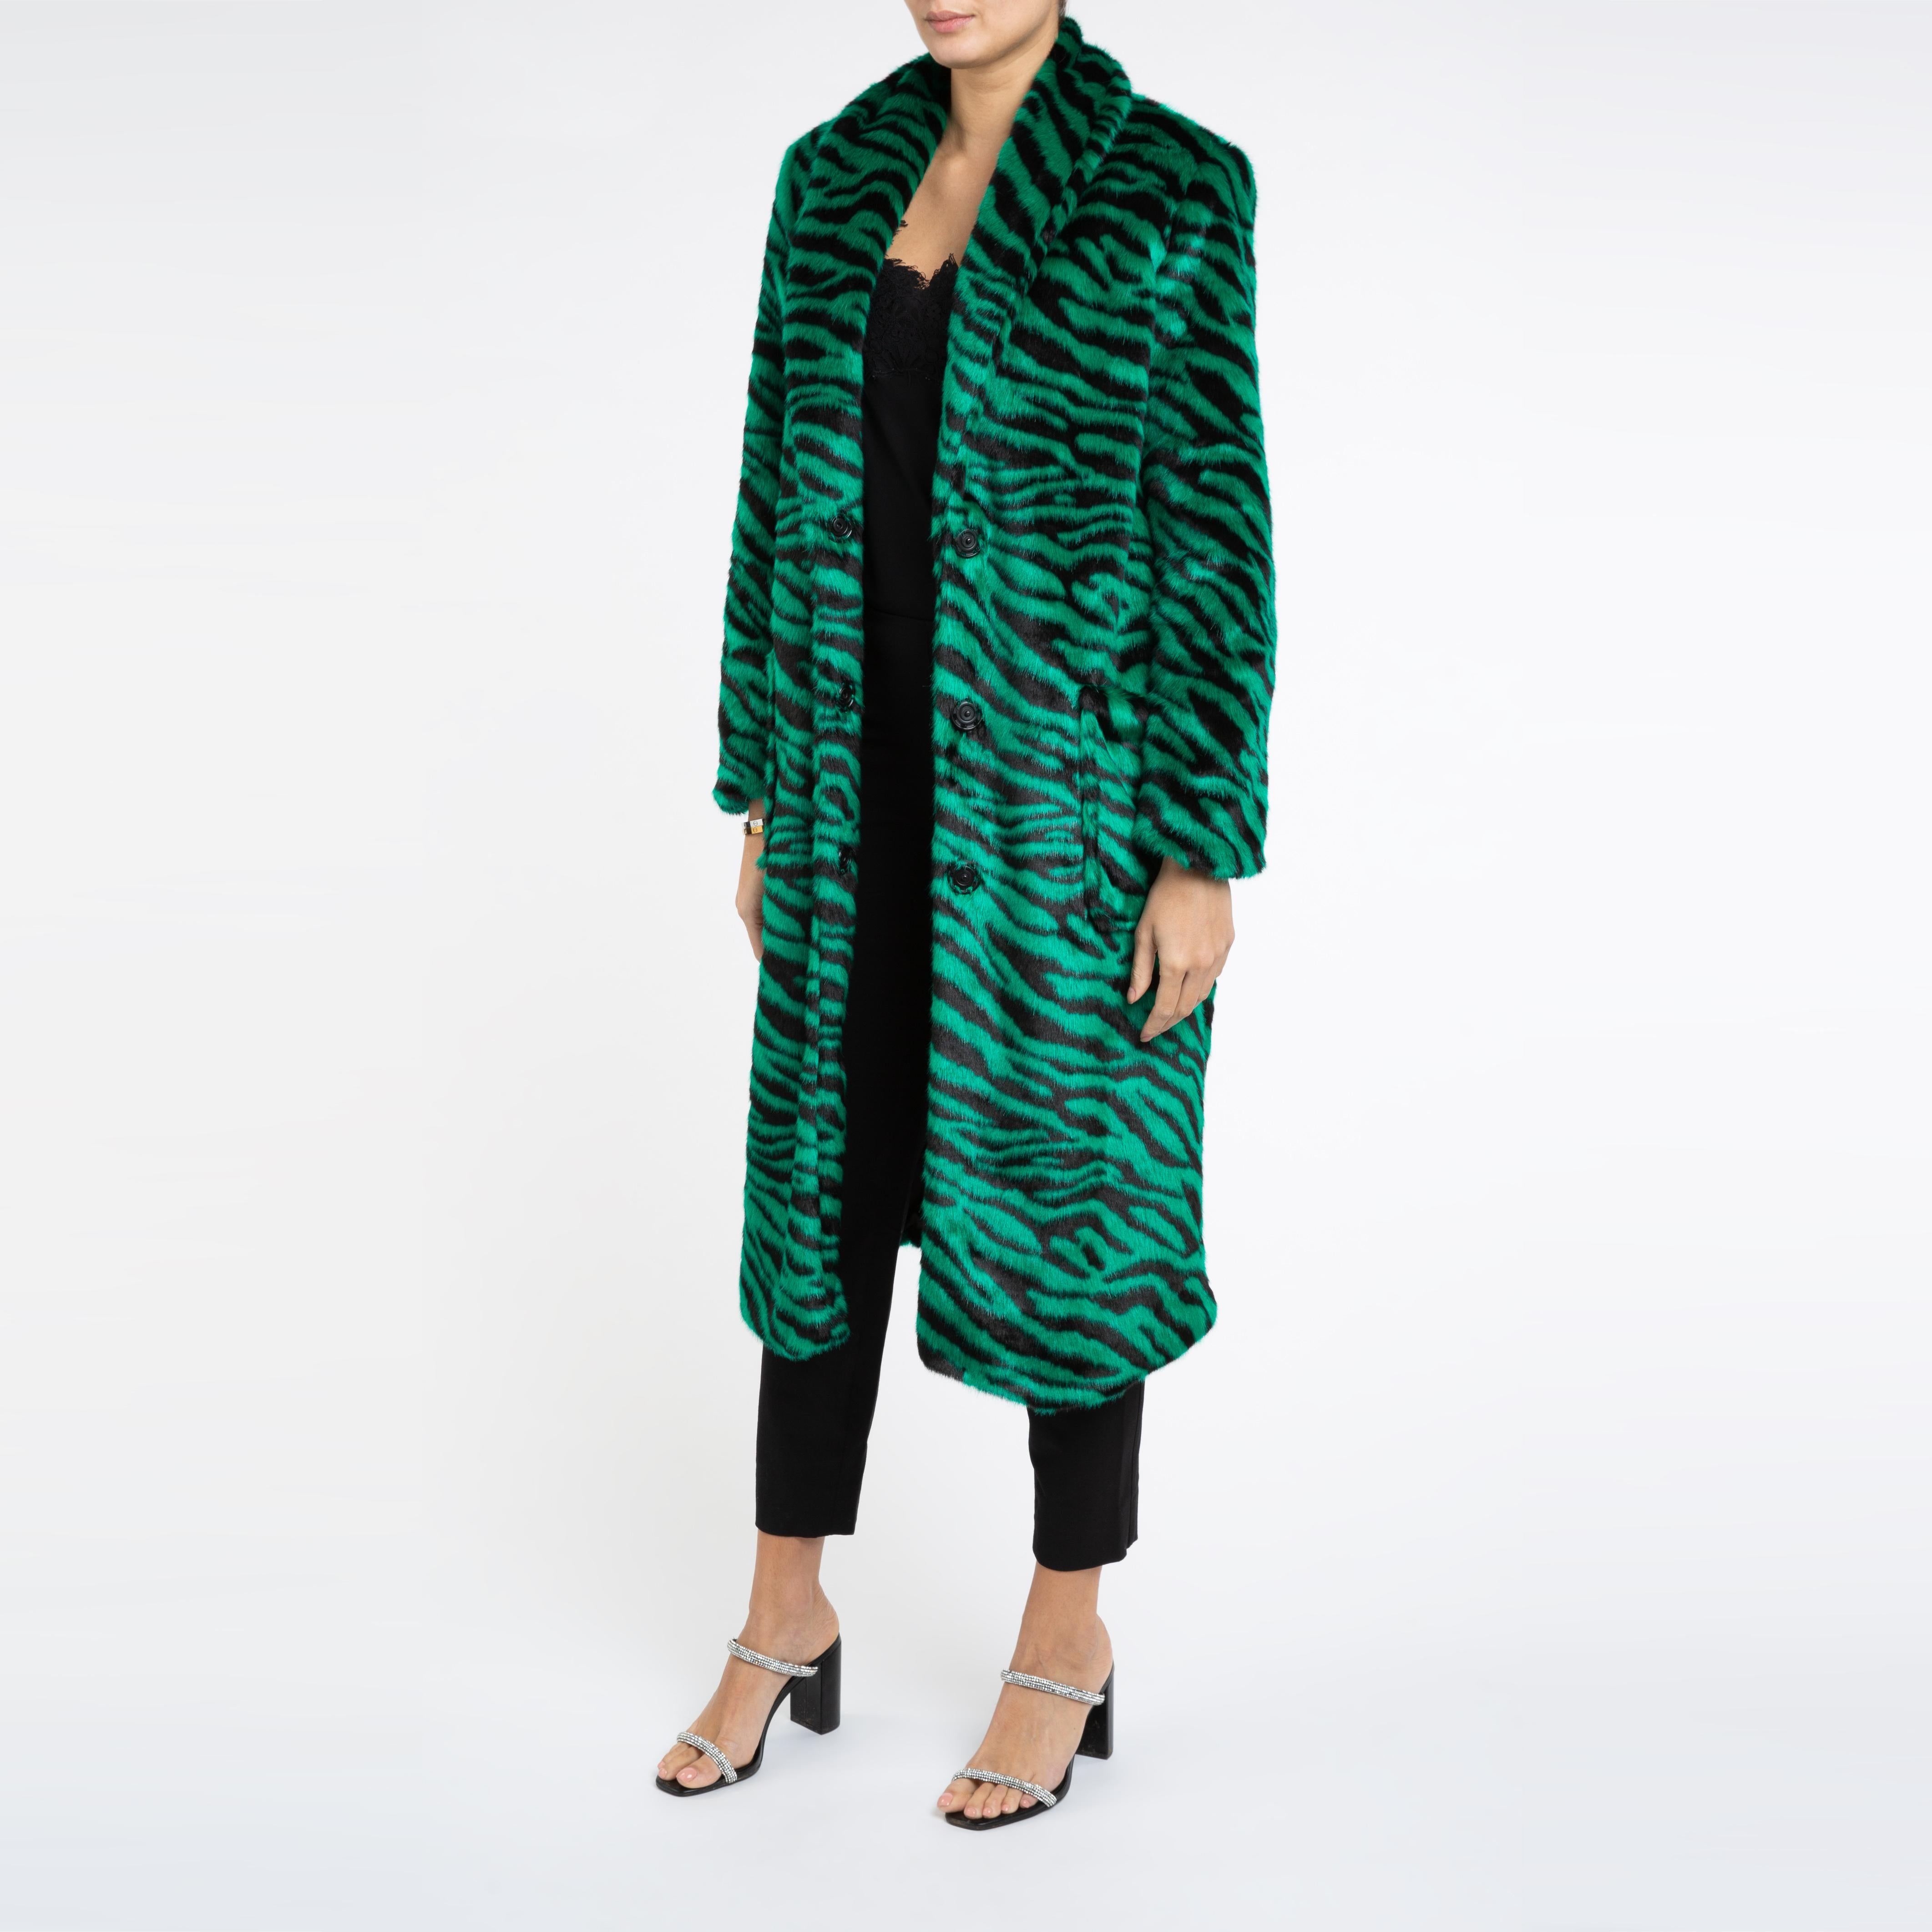 Verheyen London Esmeralda Faux Fur Coat in Emerald Green Zebra Print size uk 14 For Sale 2